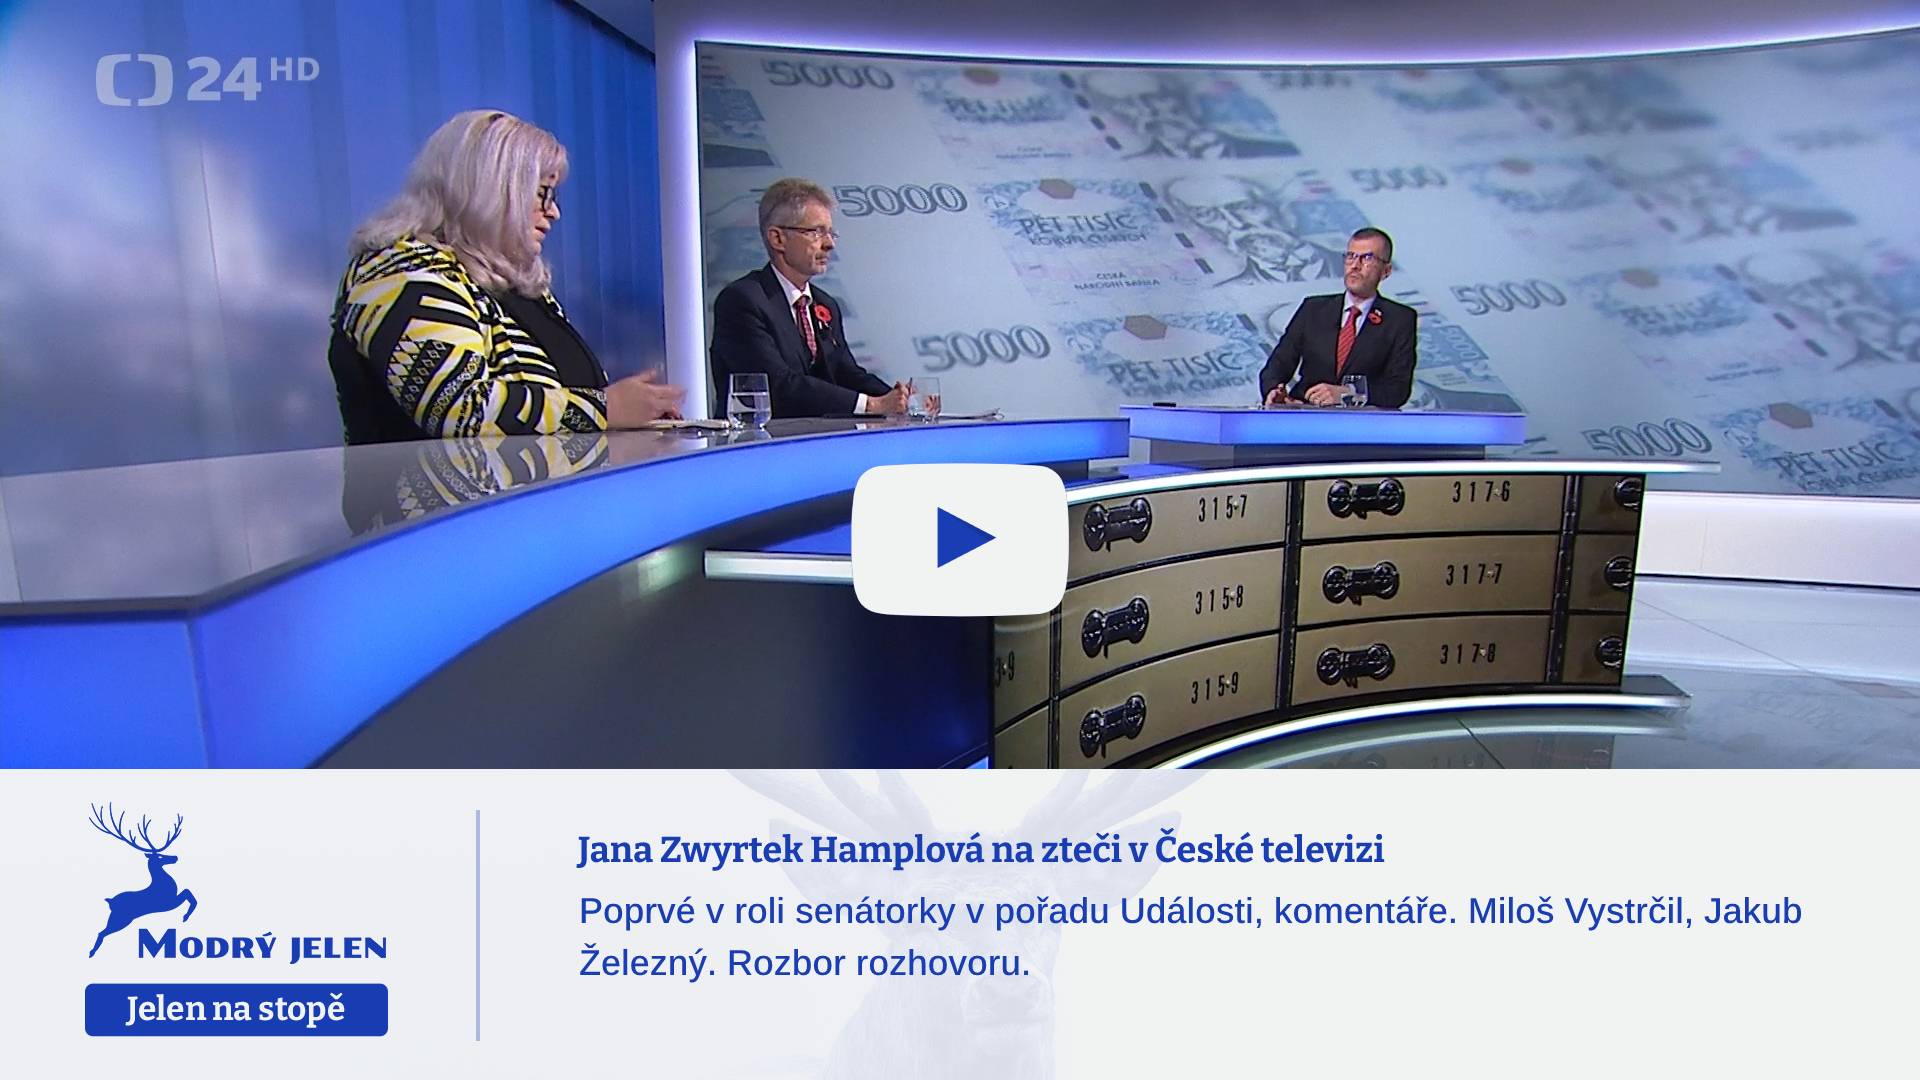 Jana Zwyrtek Hamplová na zteči v České televizi 